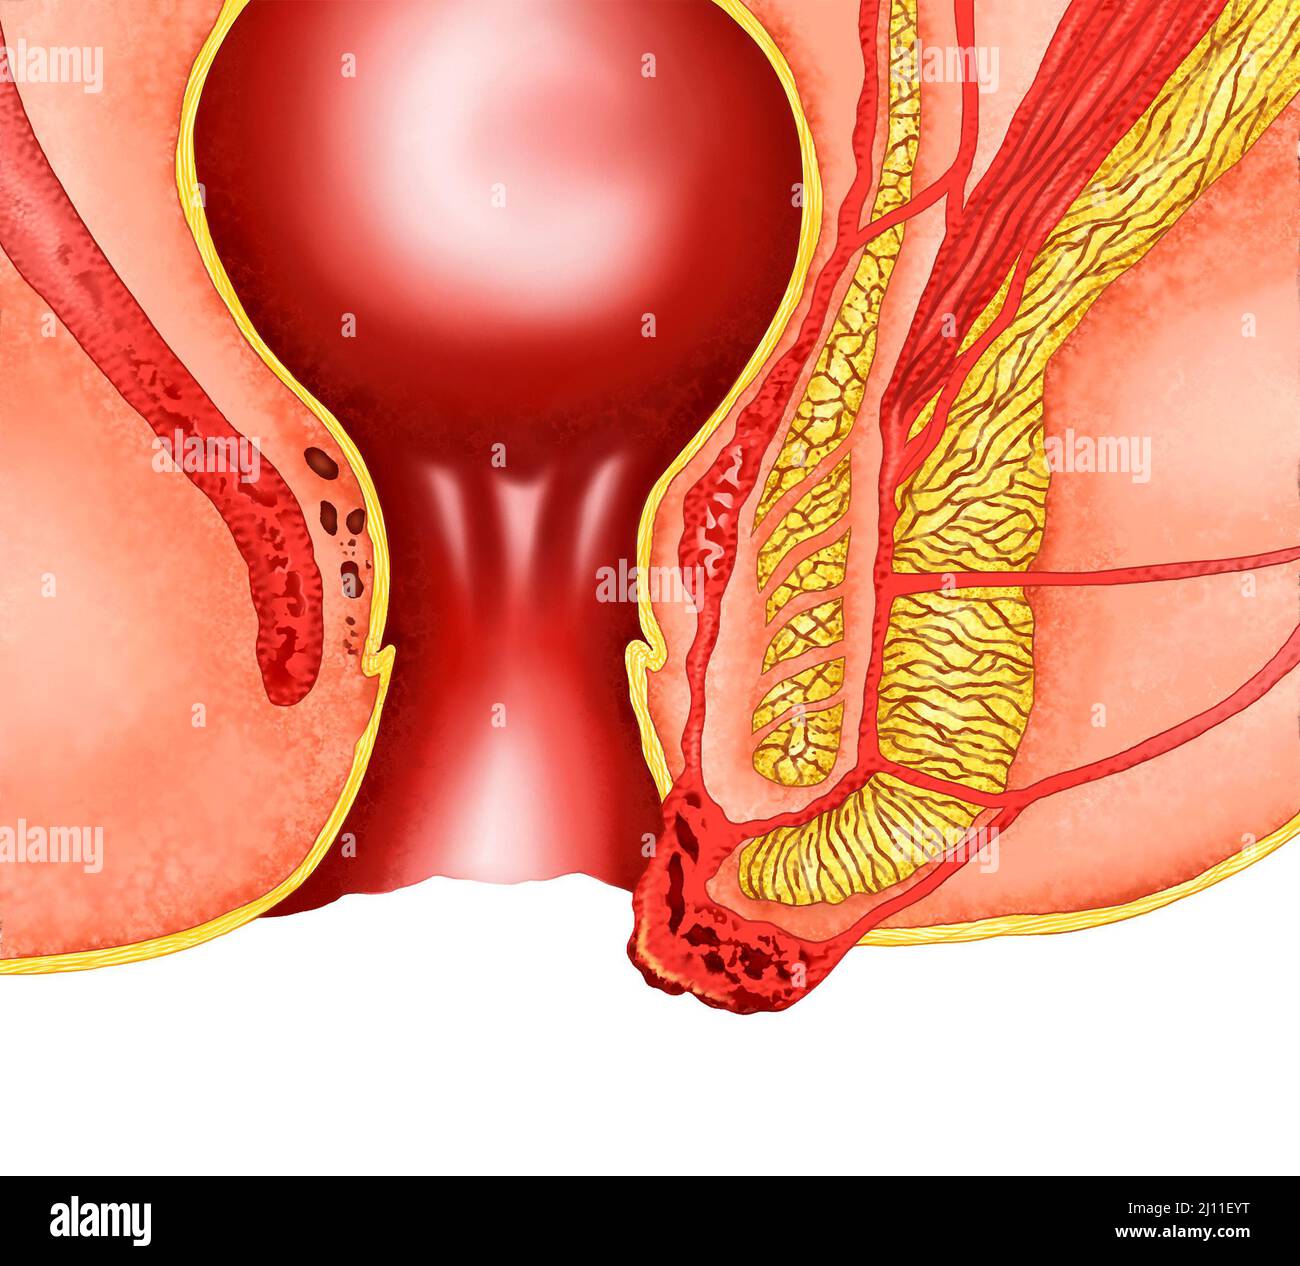 illustrazione realistica dell'anatomia delle emorroidi Foto Stock